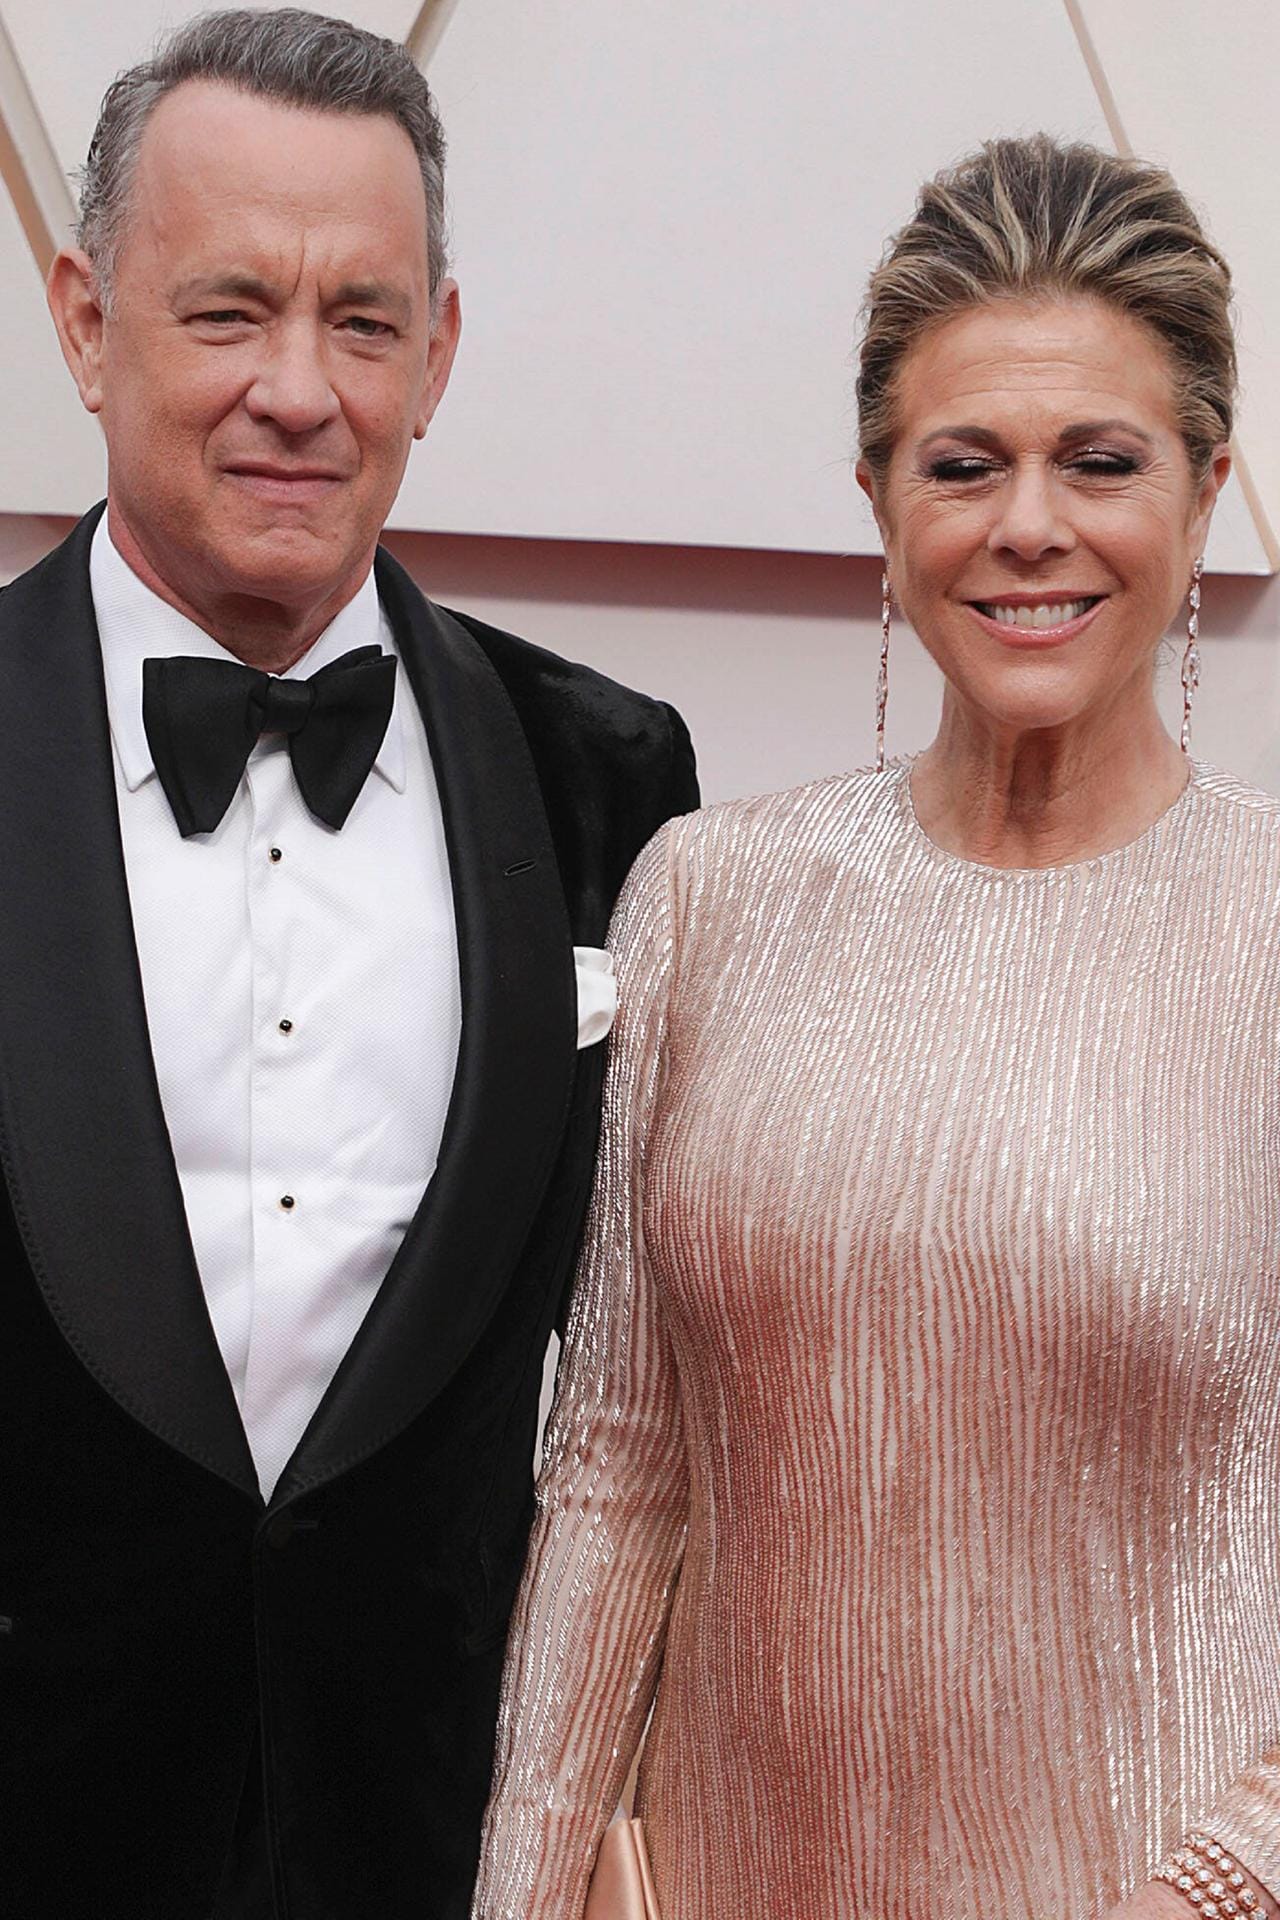 Tom Hanks und Rita Wilson: Das Paar hatte sich gemeinsam im Frühjahr 2020 in Australien angesteckt. Der Schauspieler hatte sich etwas müde gefühlt, wie bei einer Erkältung. Seine Frau hatte zudem immer wieder Schüttelfrost und leichtes Fieber gehabt.